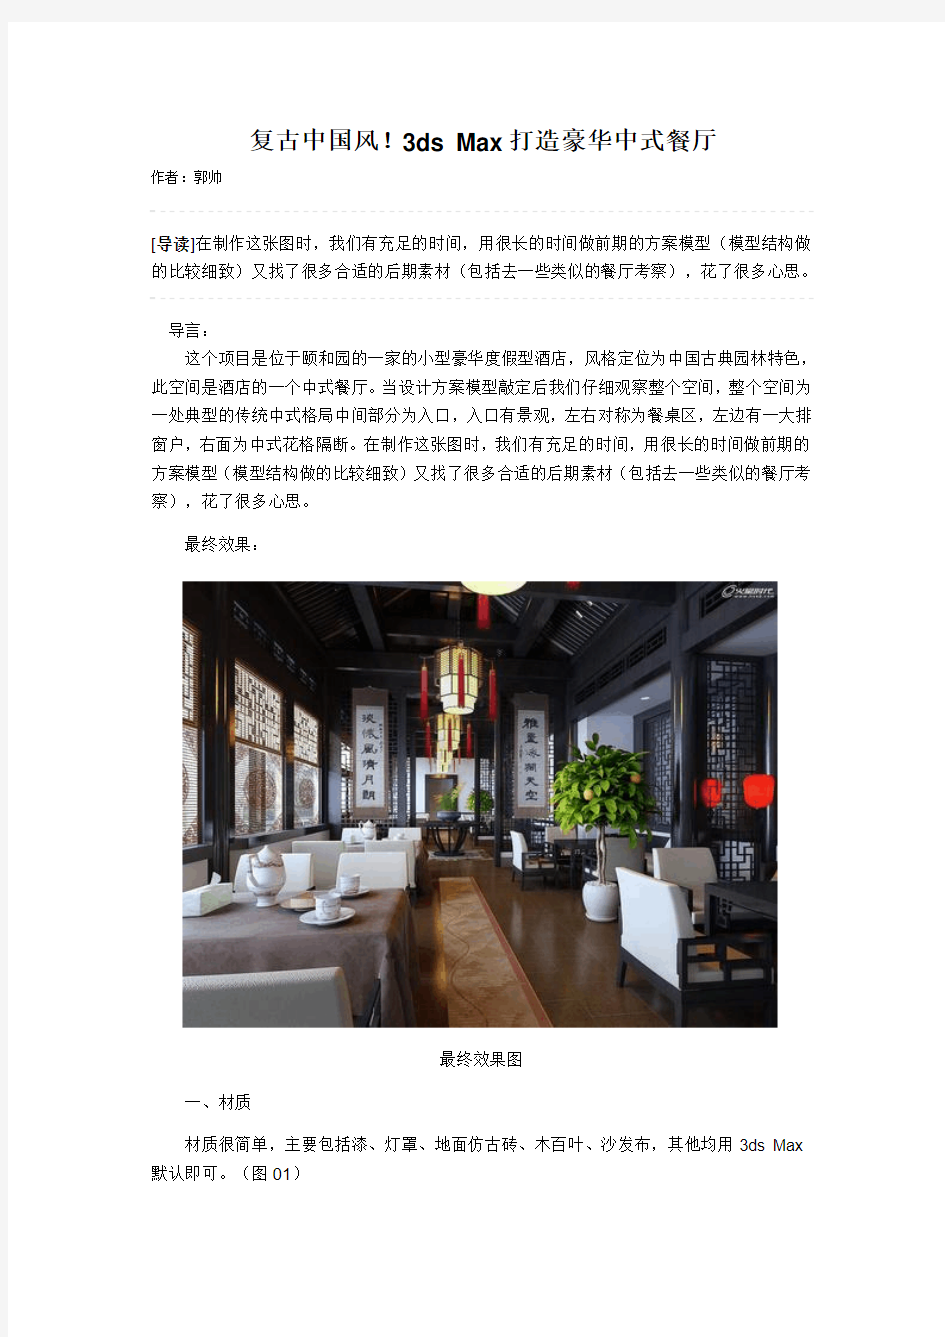 复古中国风!3ds Max打造豪华中式餐厅